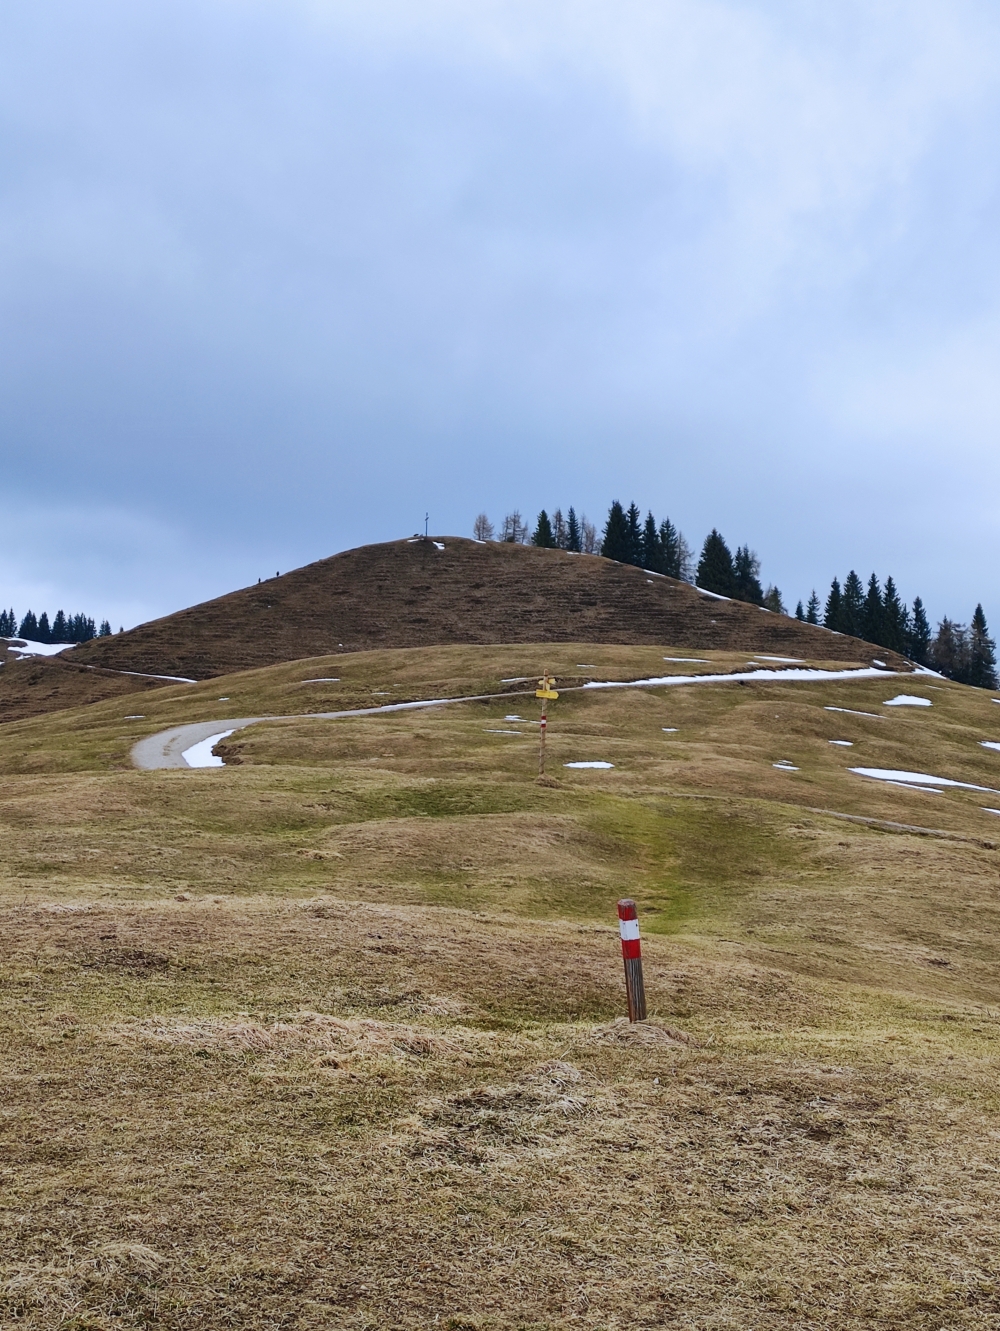 Brennkopf -> Wandberg Gipfelkreuz: Zum Wandberg